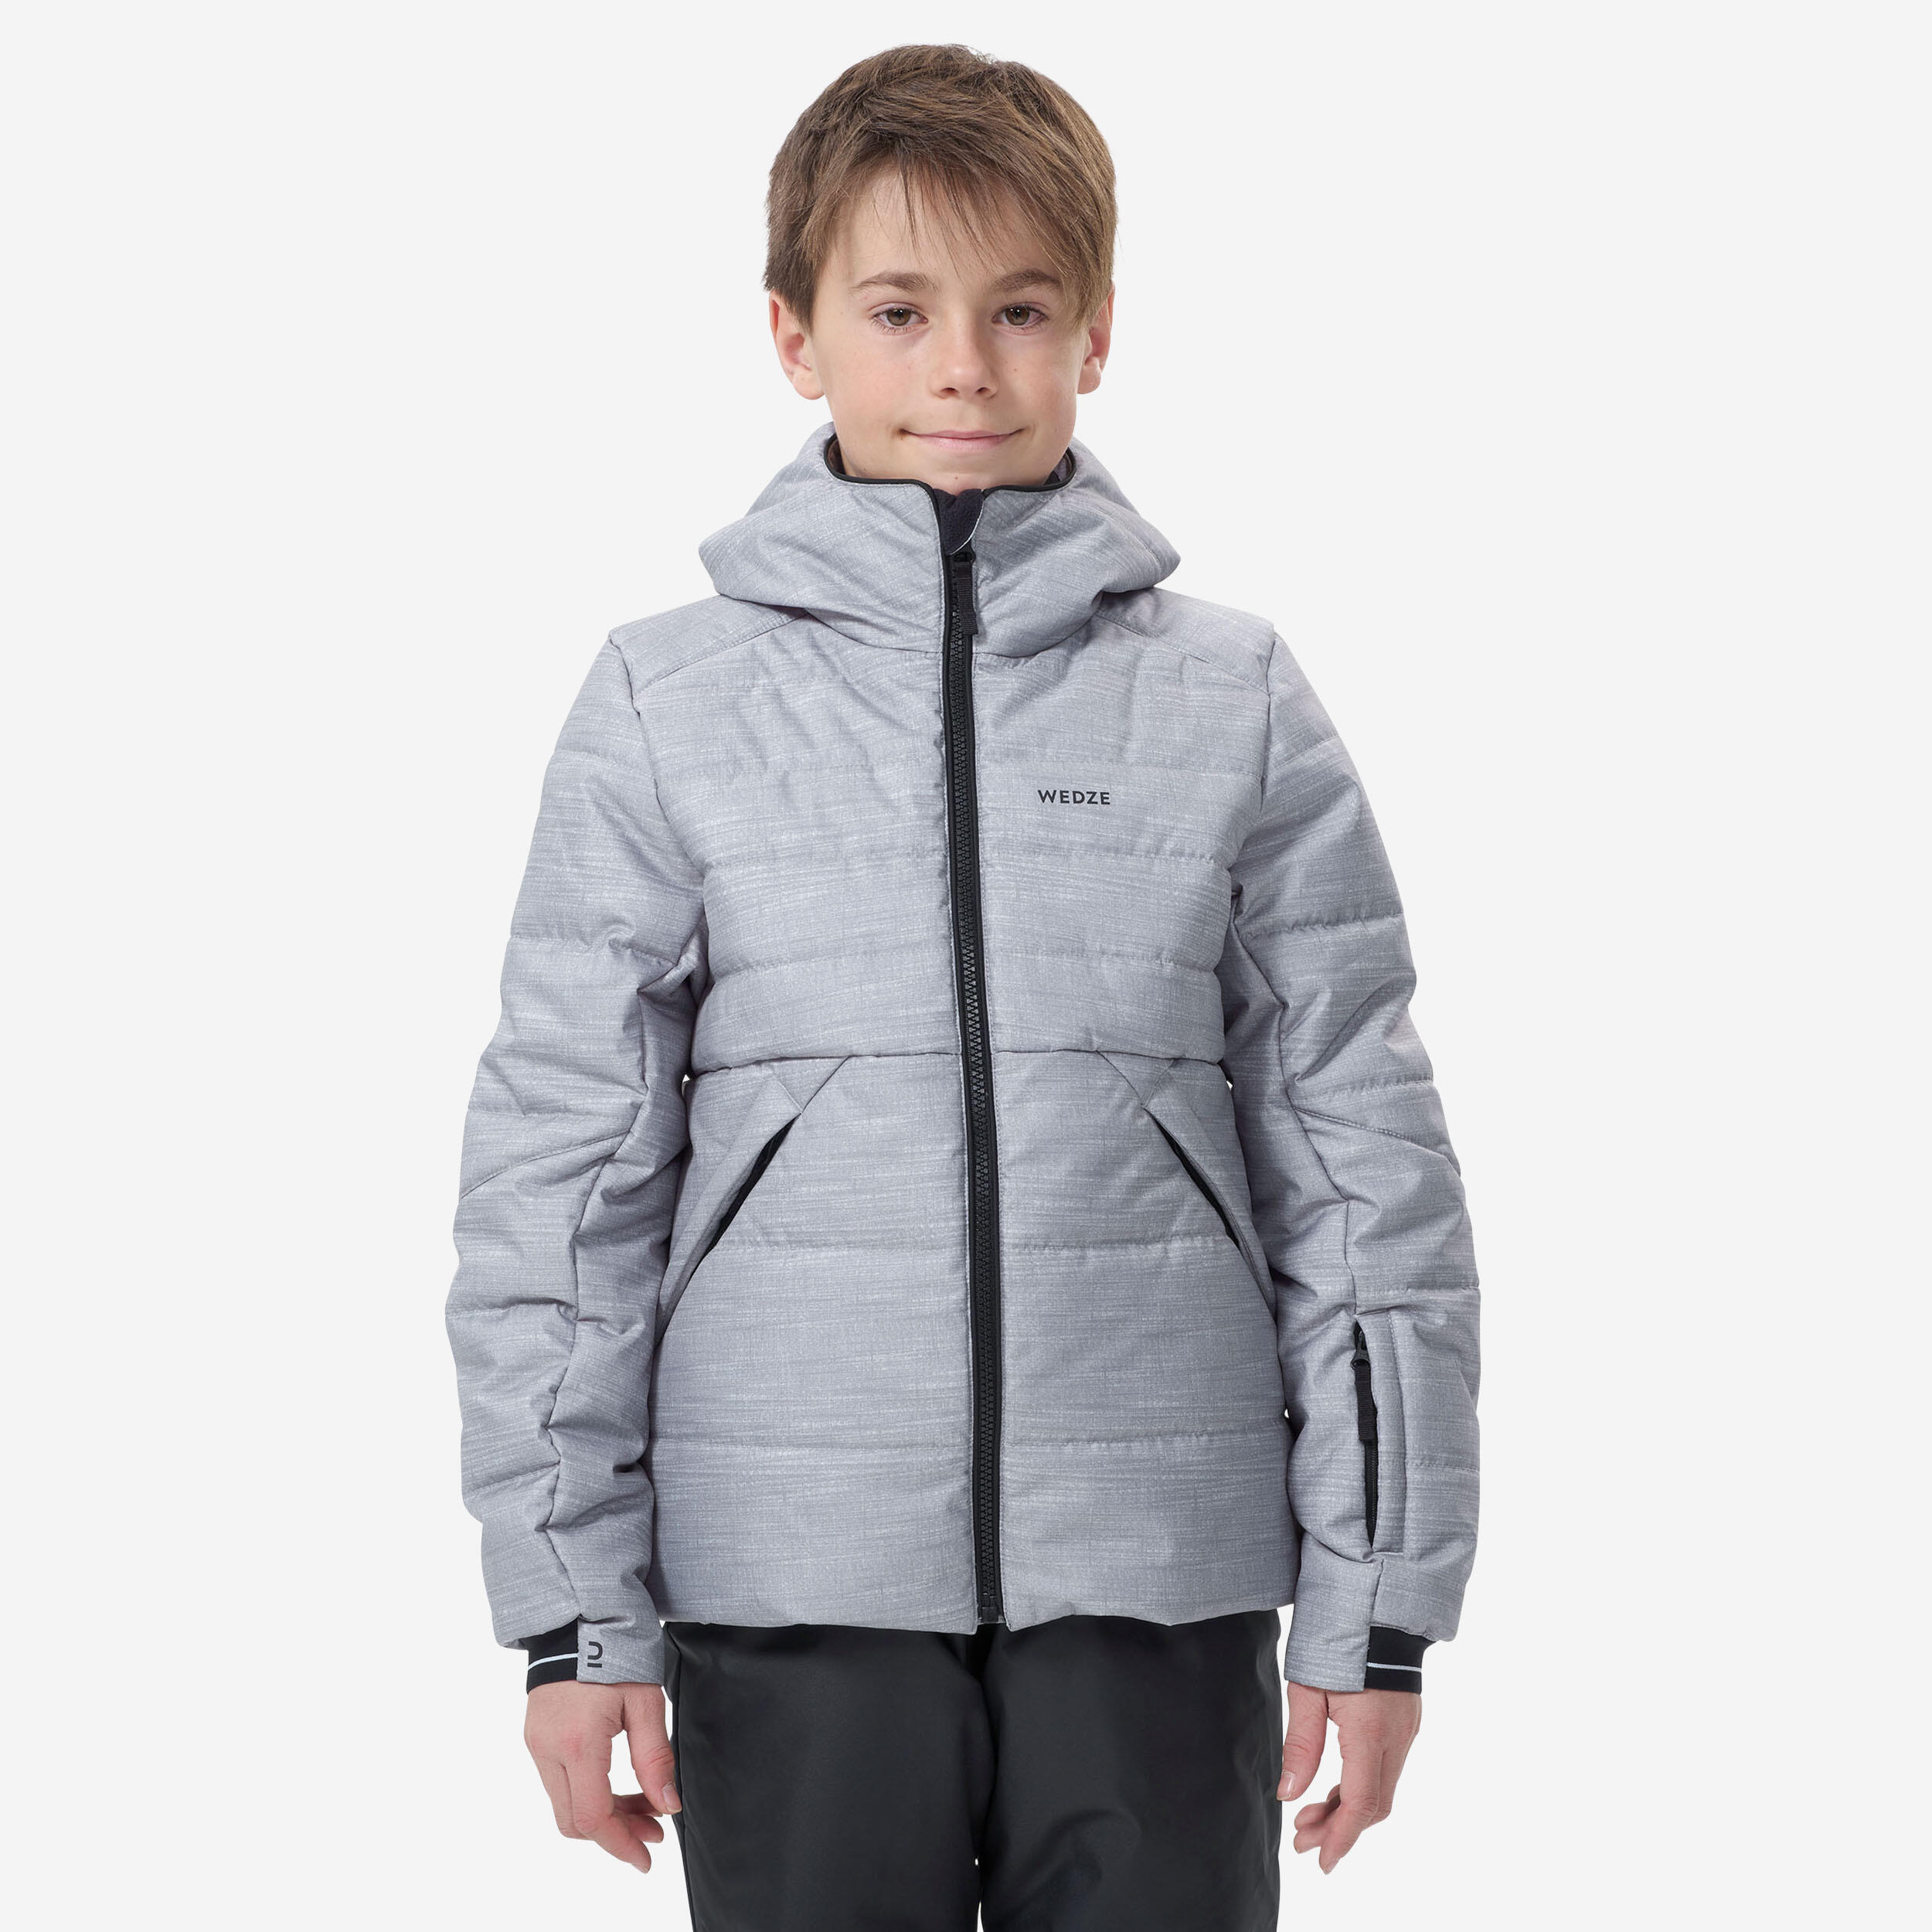 WEDZE Kids’ Extra Warm and Waterproof Padded Ski Jacket 180 WARM - Grey